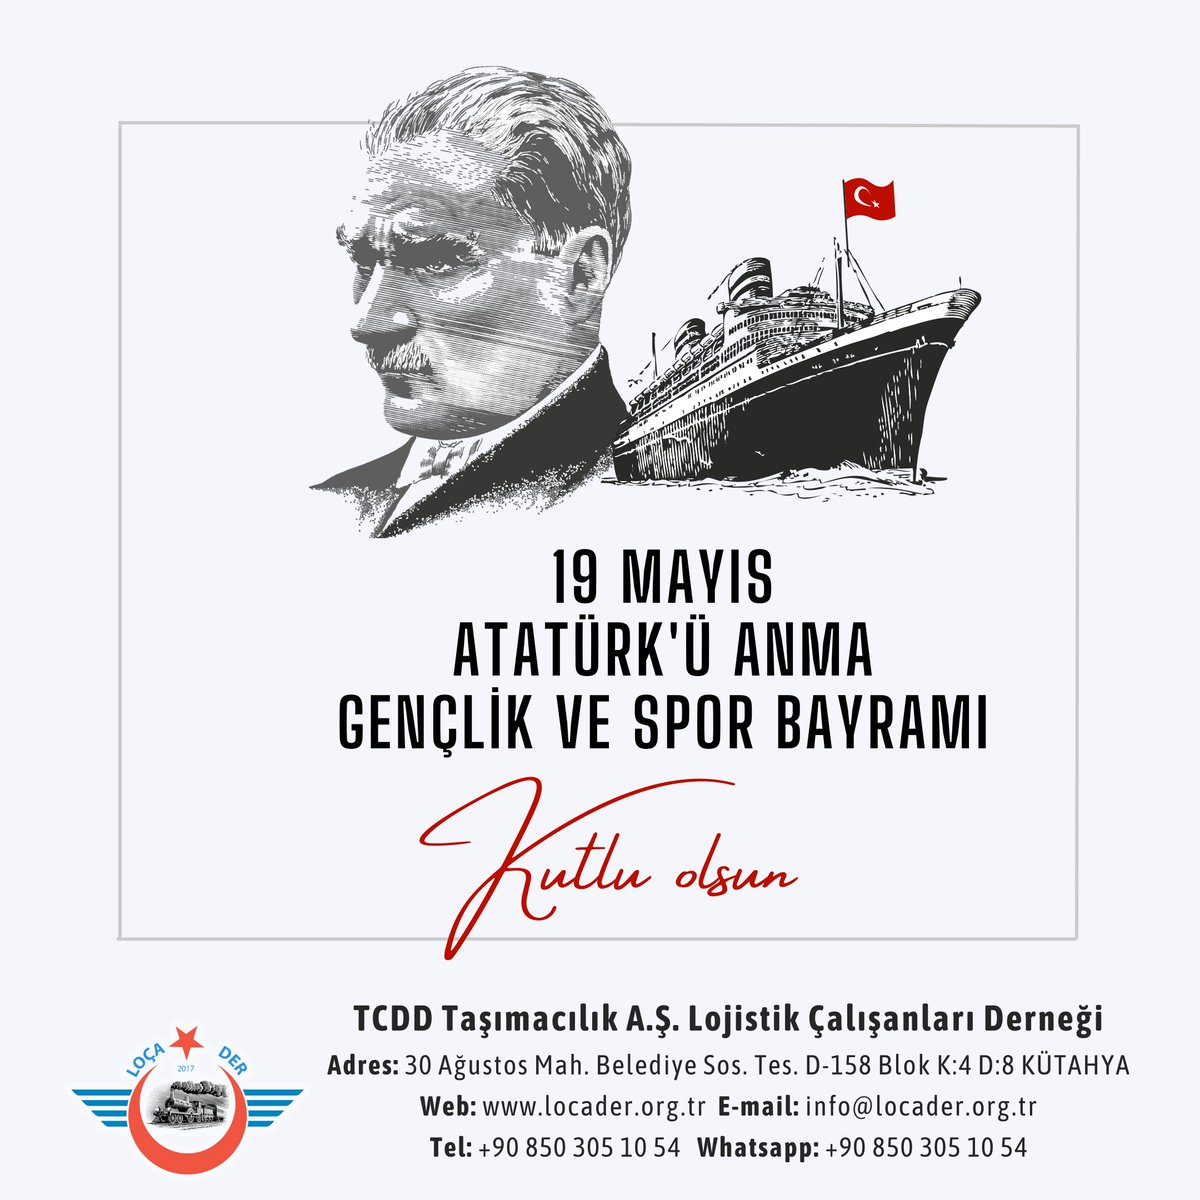 19 Mayıs Atatürk'ün Anma, Gençlik ve Spor Bayramımız kutlu olsun!